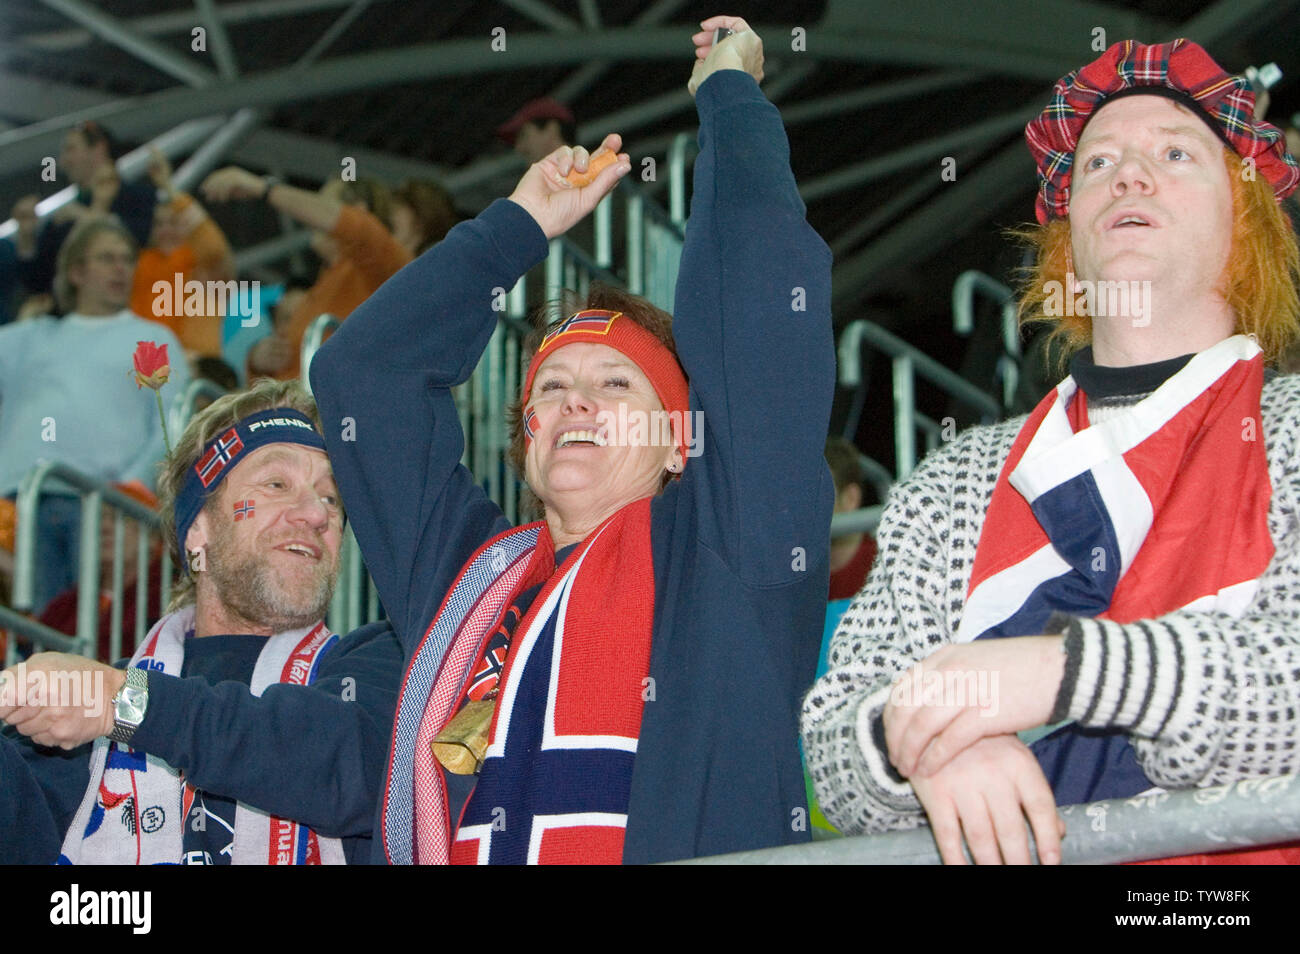 Fans norvégiens soutenir leurs patineurs dans les hommes du 5000 m en patinage de vitesse dans l'Oval Lingotto 2006 Jeux Olympiques d'hiver de Turin, le 11 février 2006. (Photo d'UPI/Heinz Ruckemann) Banque D'Images